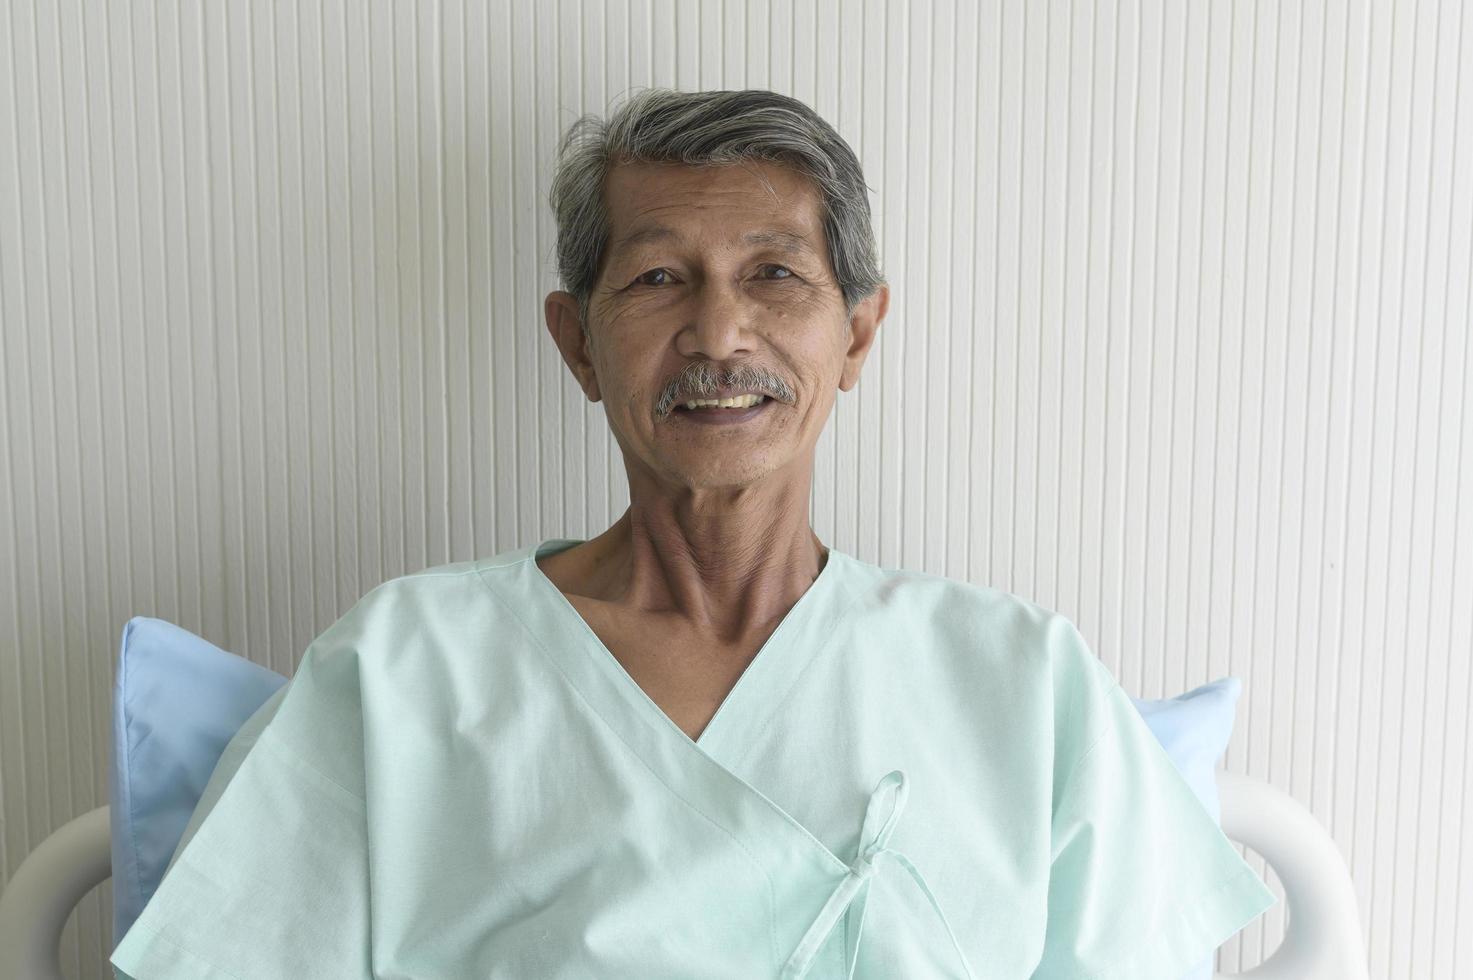 retrato de un paciente mayor acostado en la cama en el hospital, atención médica y concepto médico foto